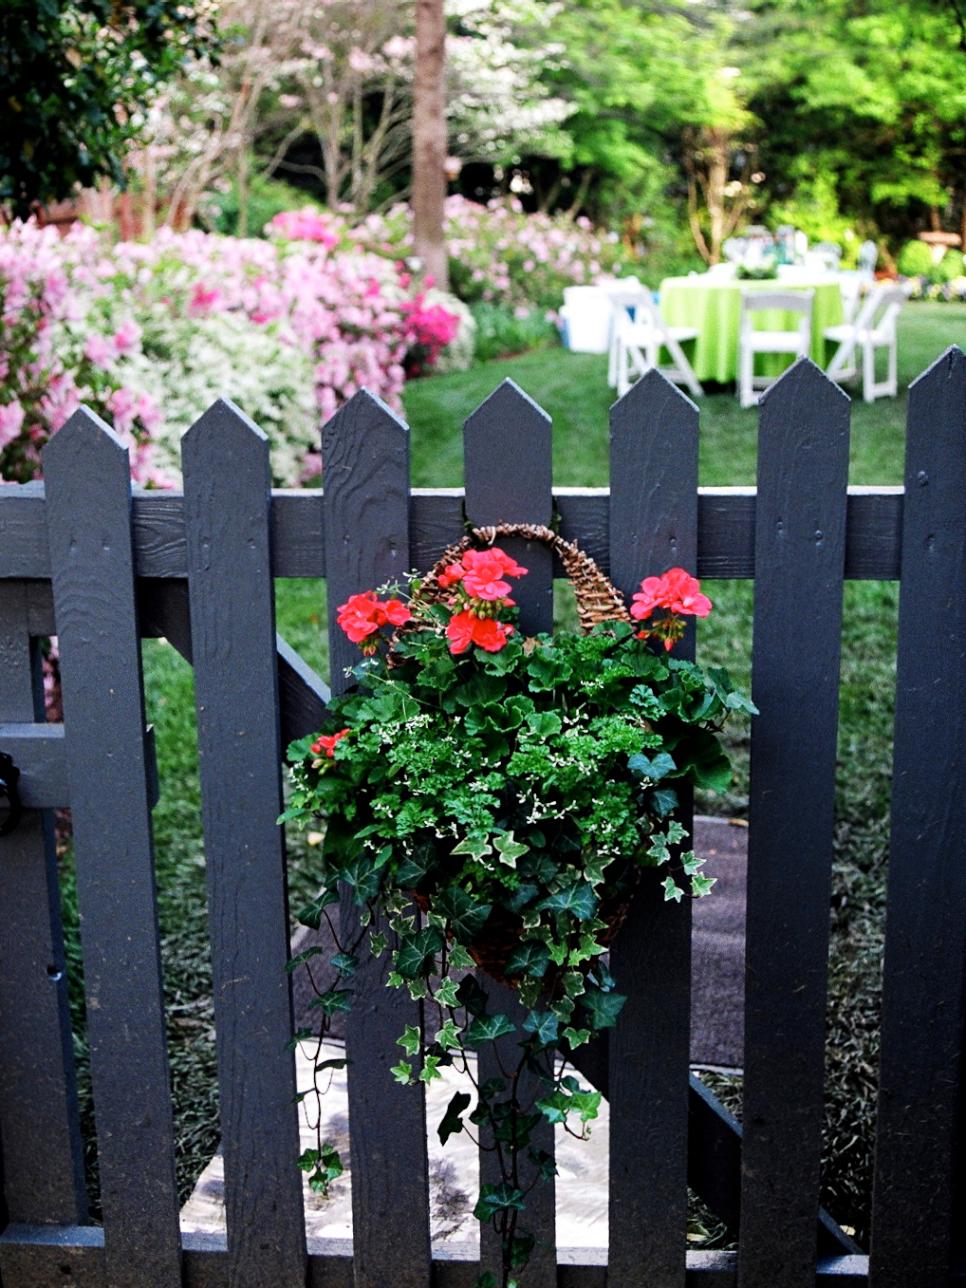 Cottage Garden With Floral Basket on Black Picket Fence